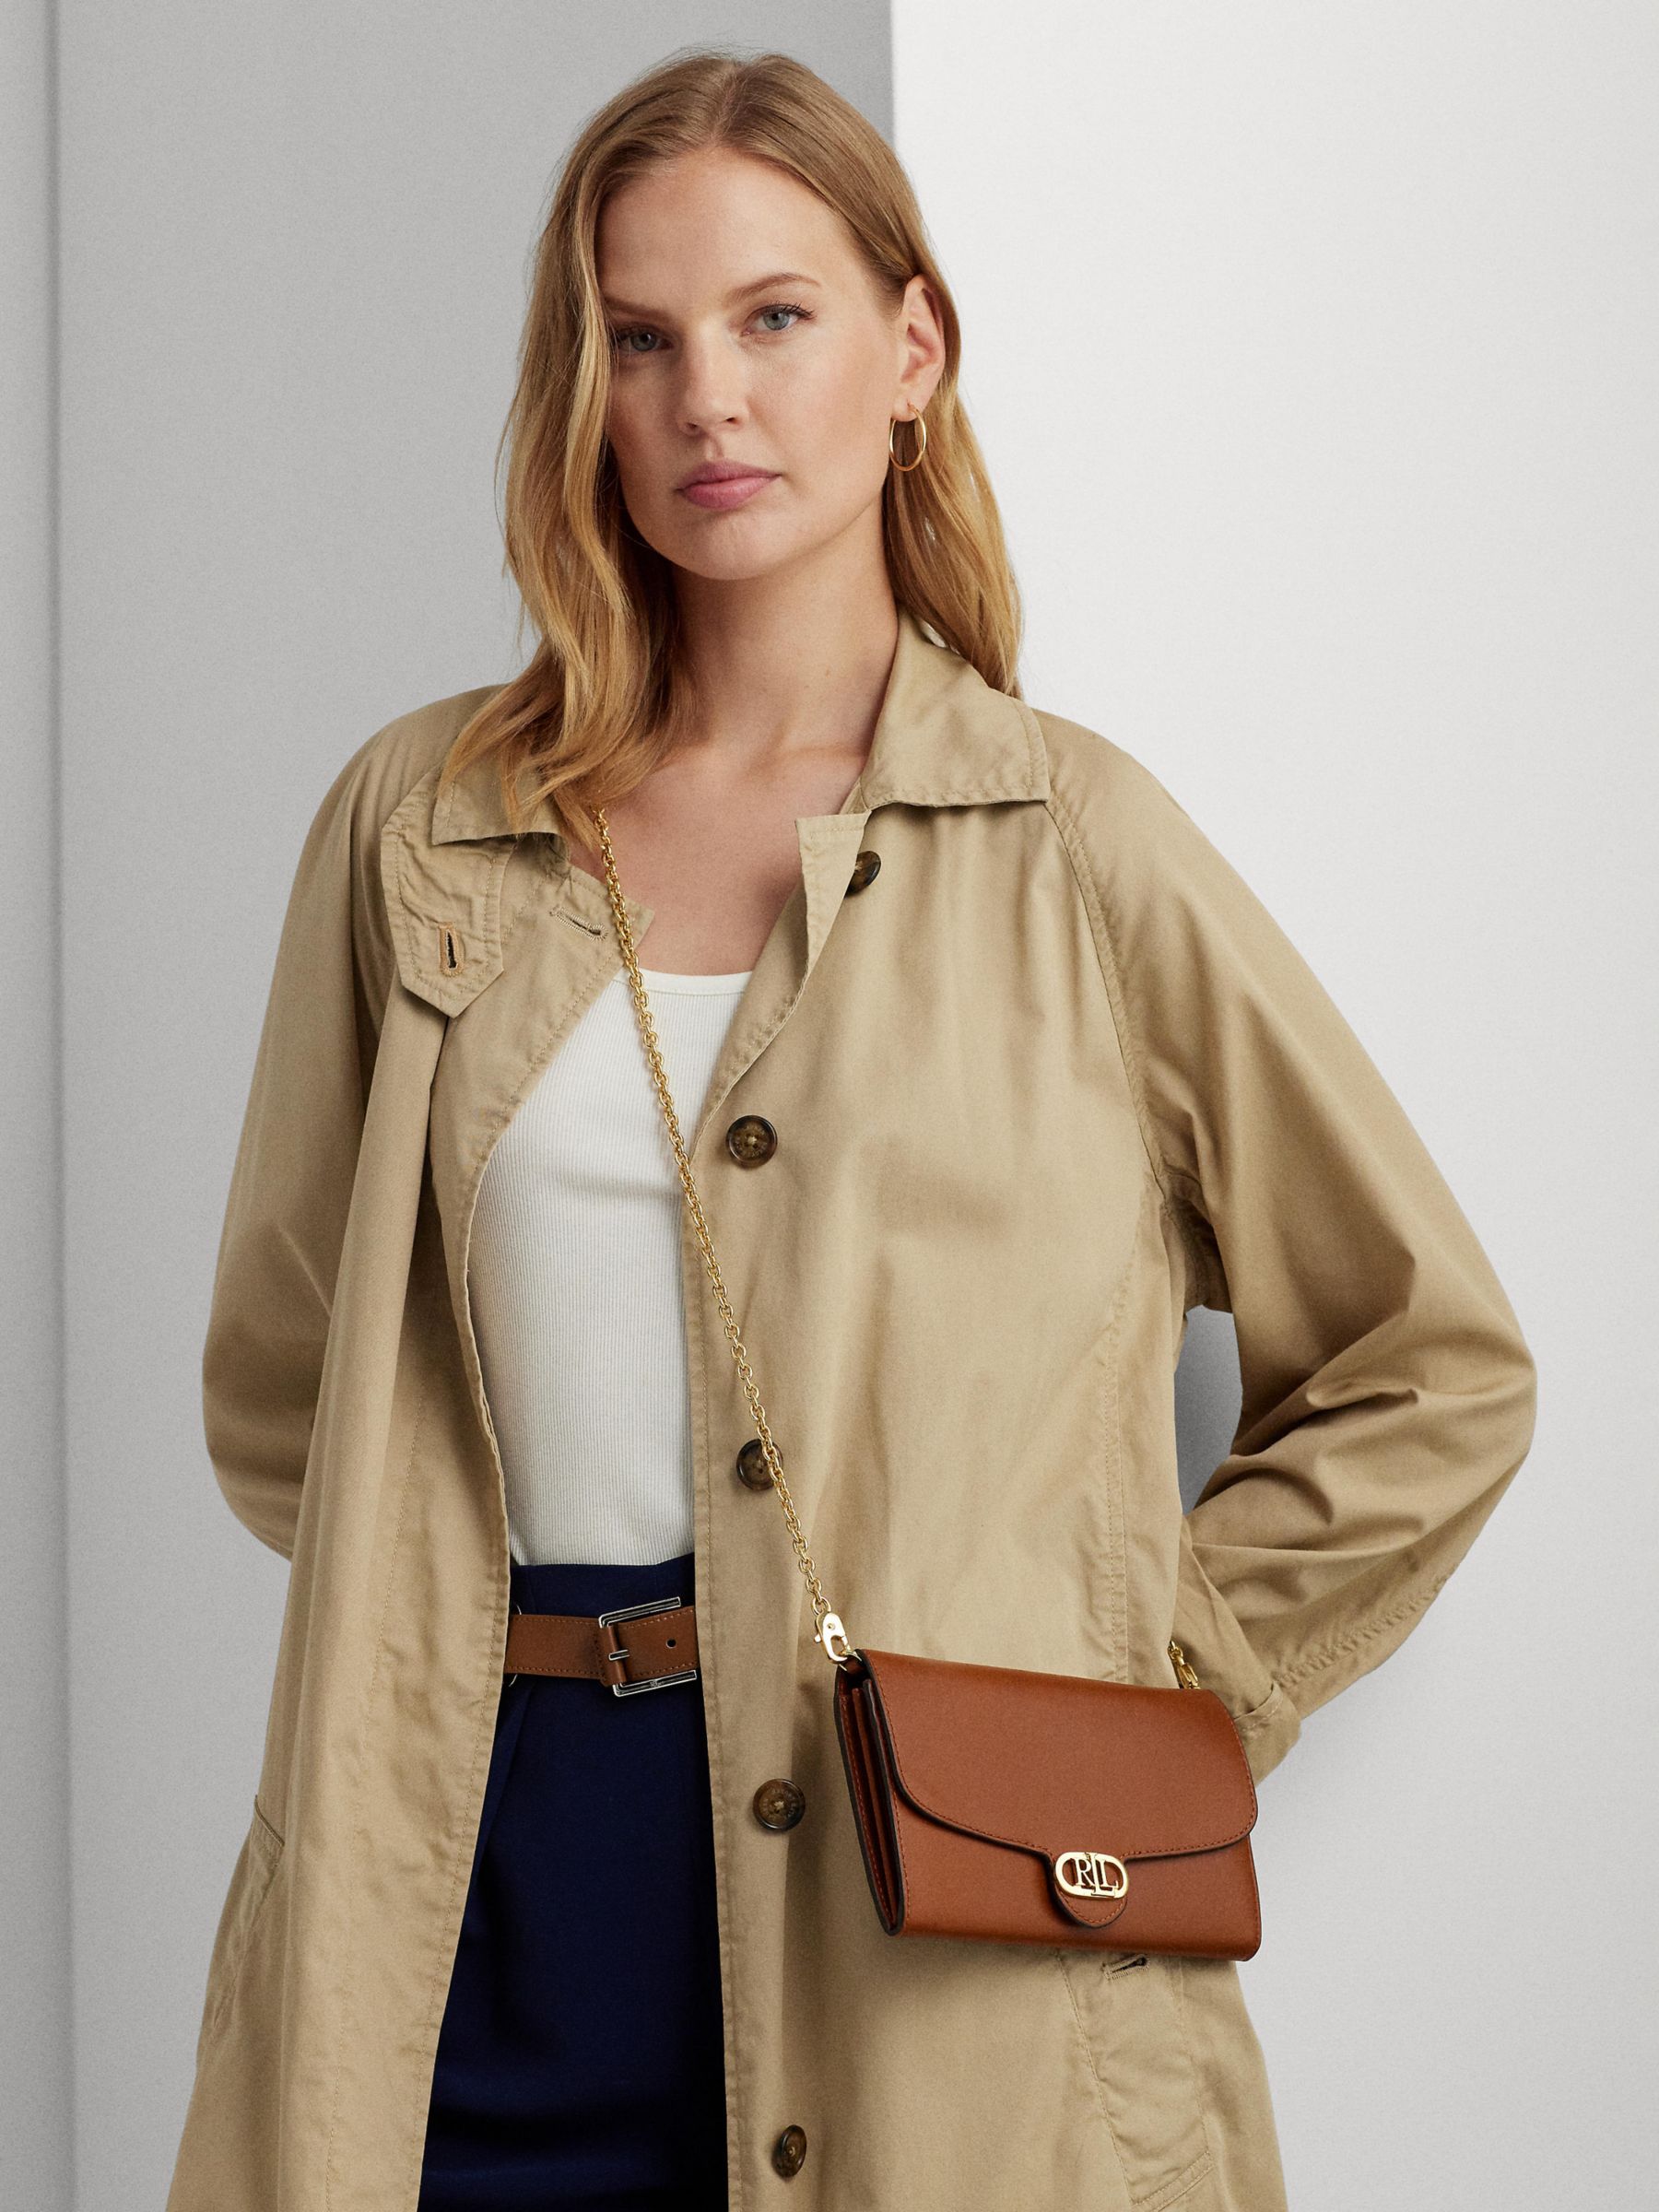 Buy Lauren Ralph Lauren Adair Leather Cross Body Bag Online at johnlewis.com